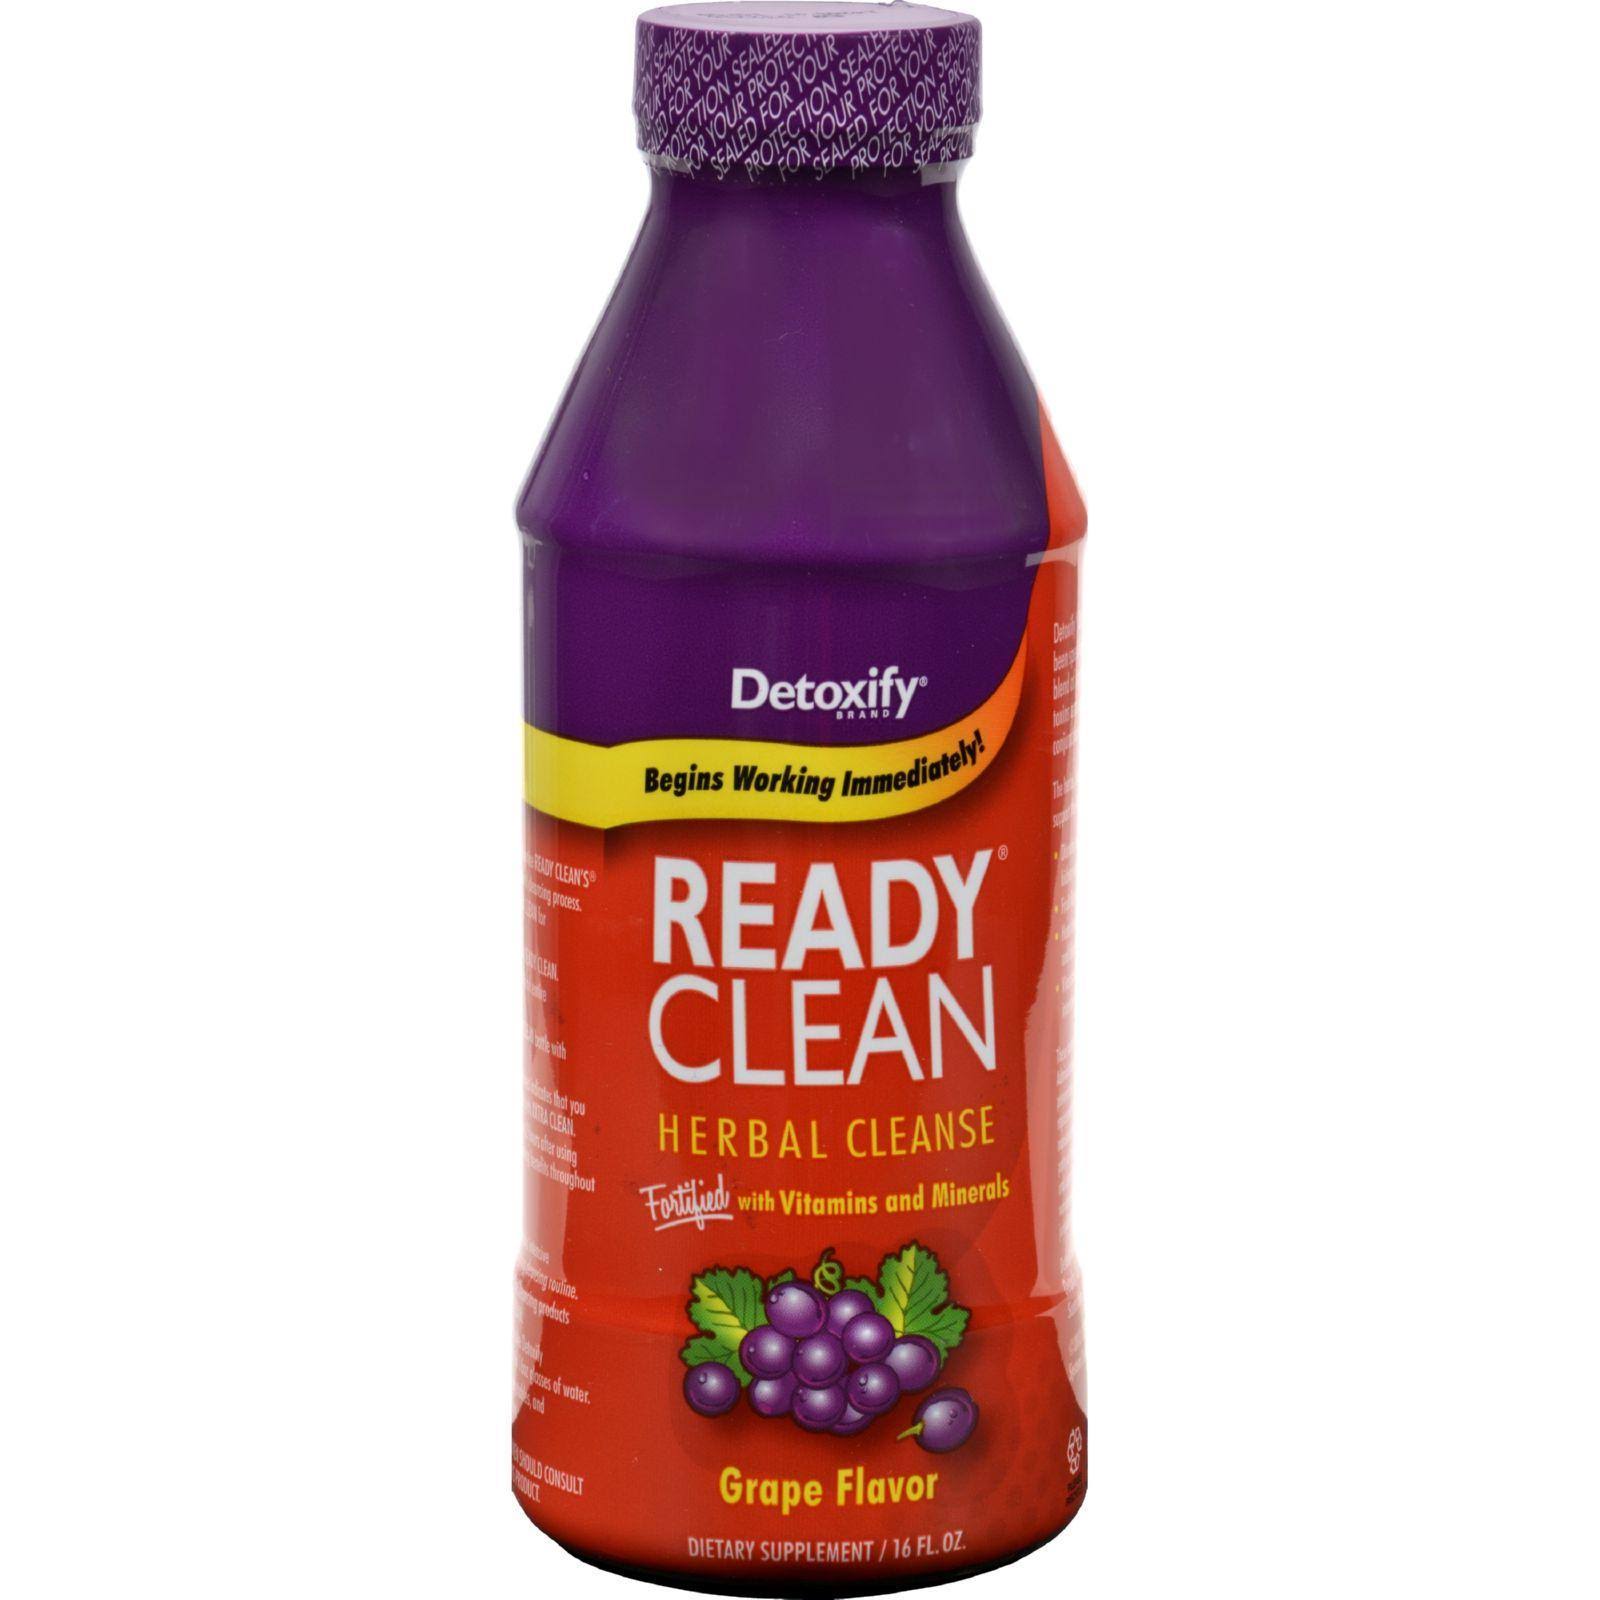 Detoxify Ready Clean Herbal Cleanse - Grape, 16oz